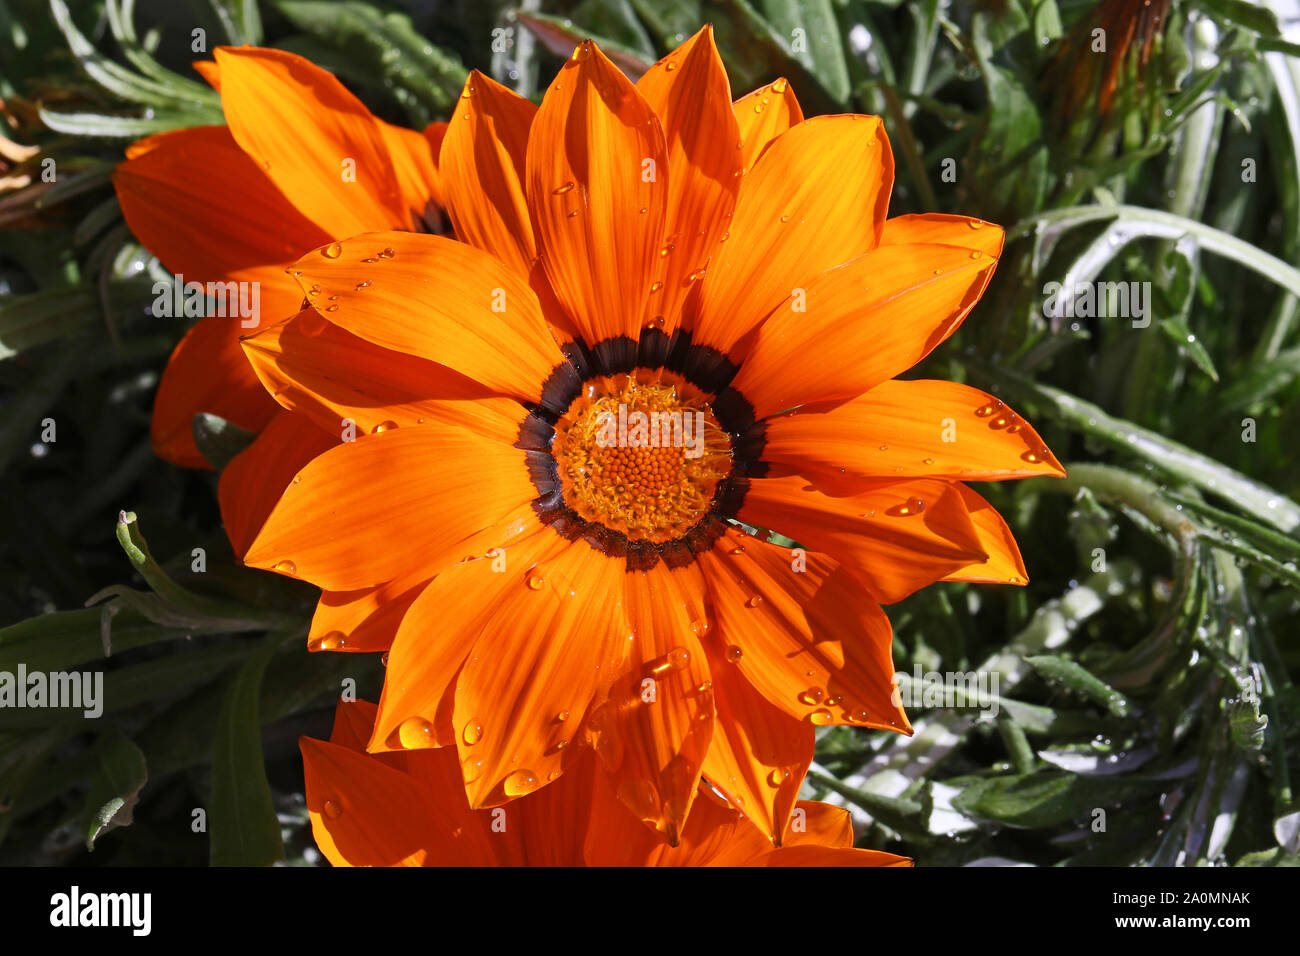 Helles orange gazania Rigens oder splendens Variegata compositae Asteraceae Auch als Schatz Blume mit Regentropfen blühen in Italien bekannt Stockfoto